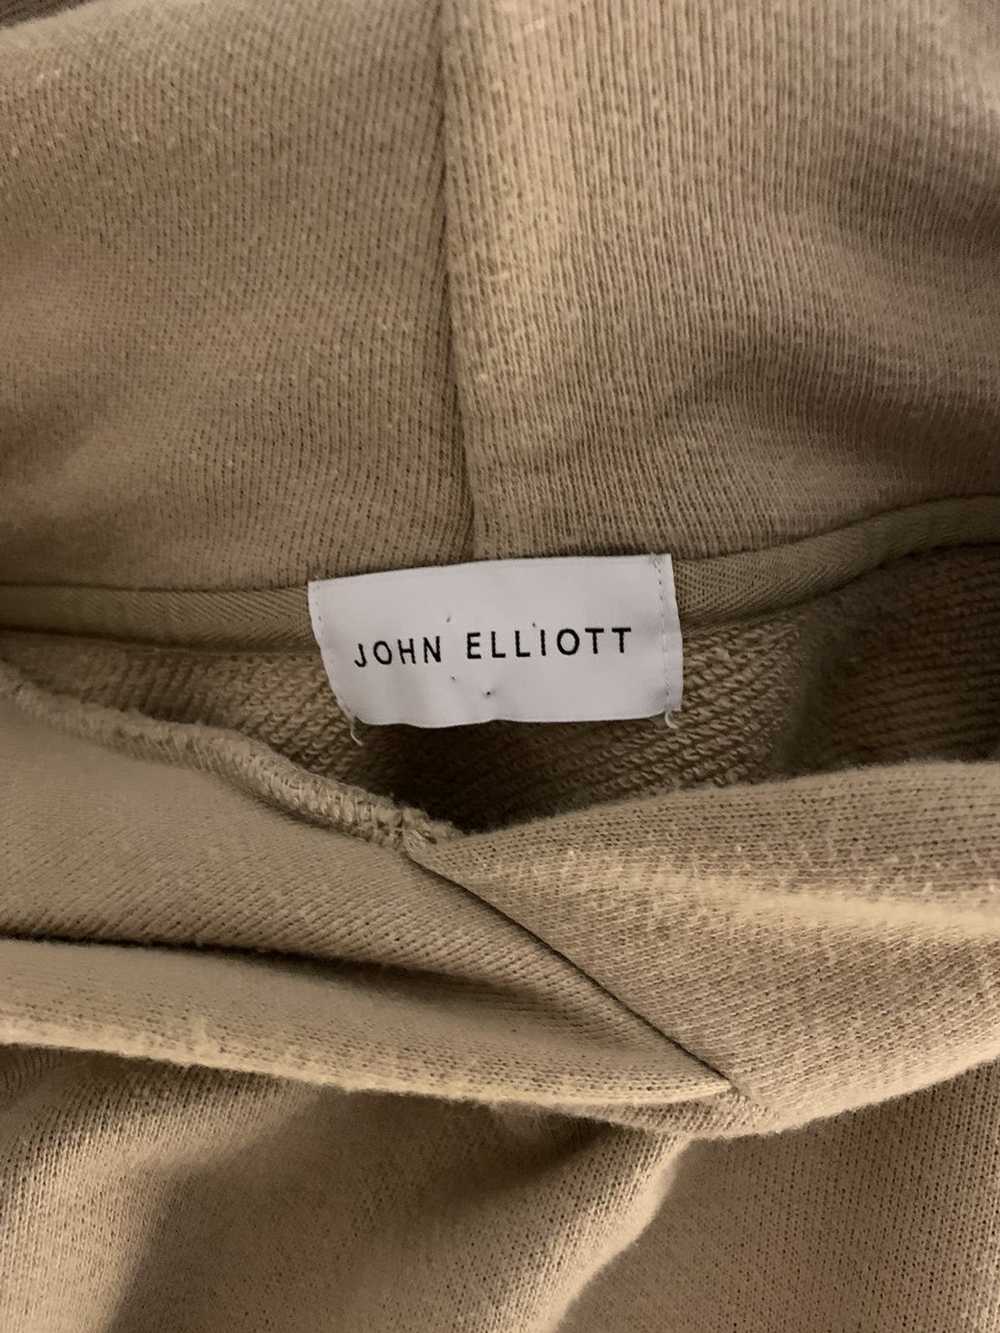 John Elliott John Elliott Hooded Villain Size 4/XL - image 6